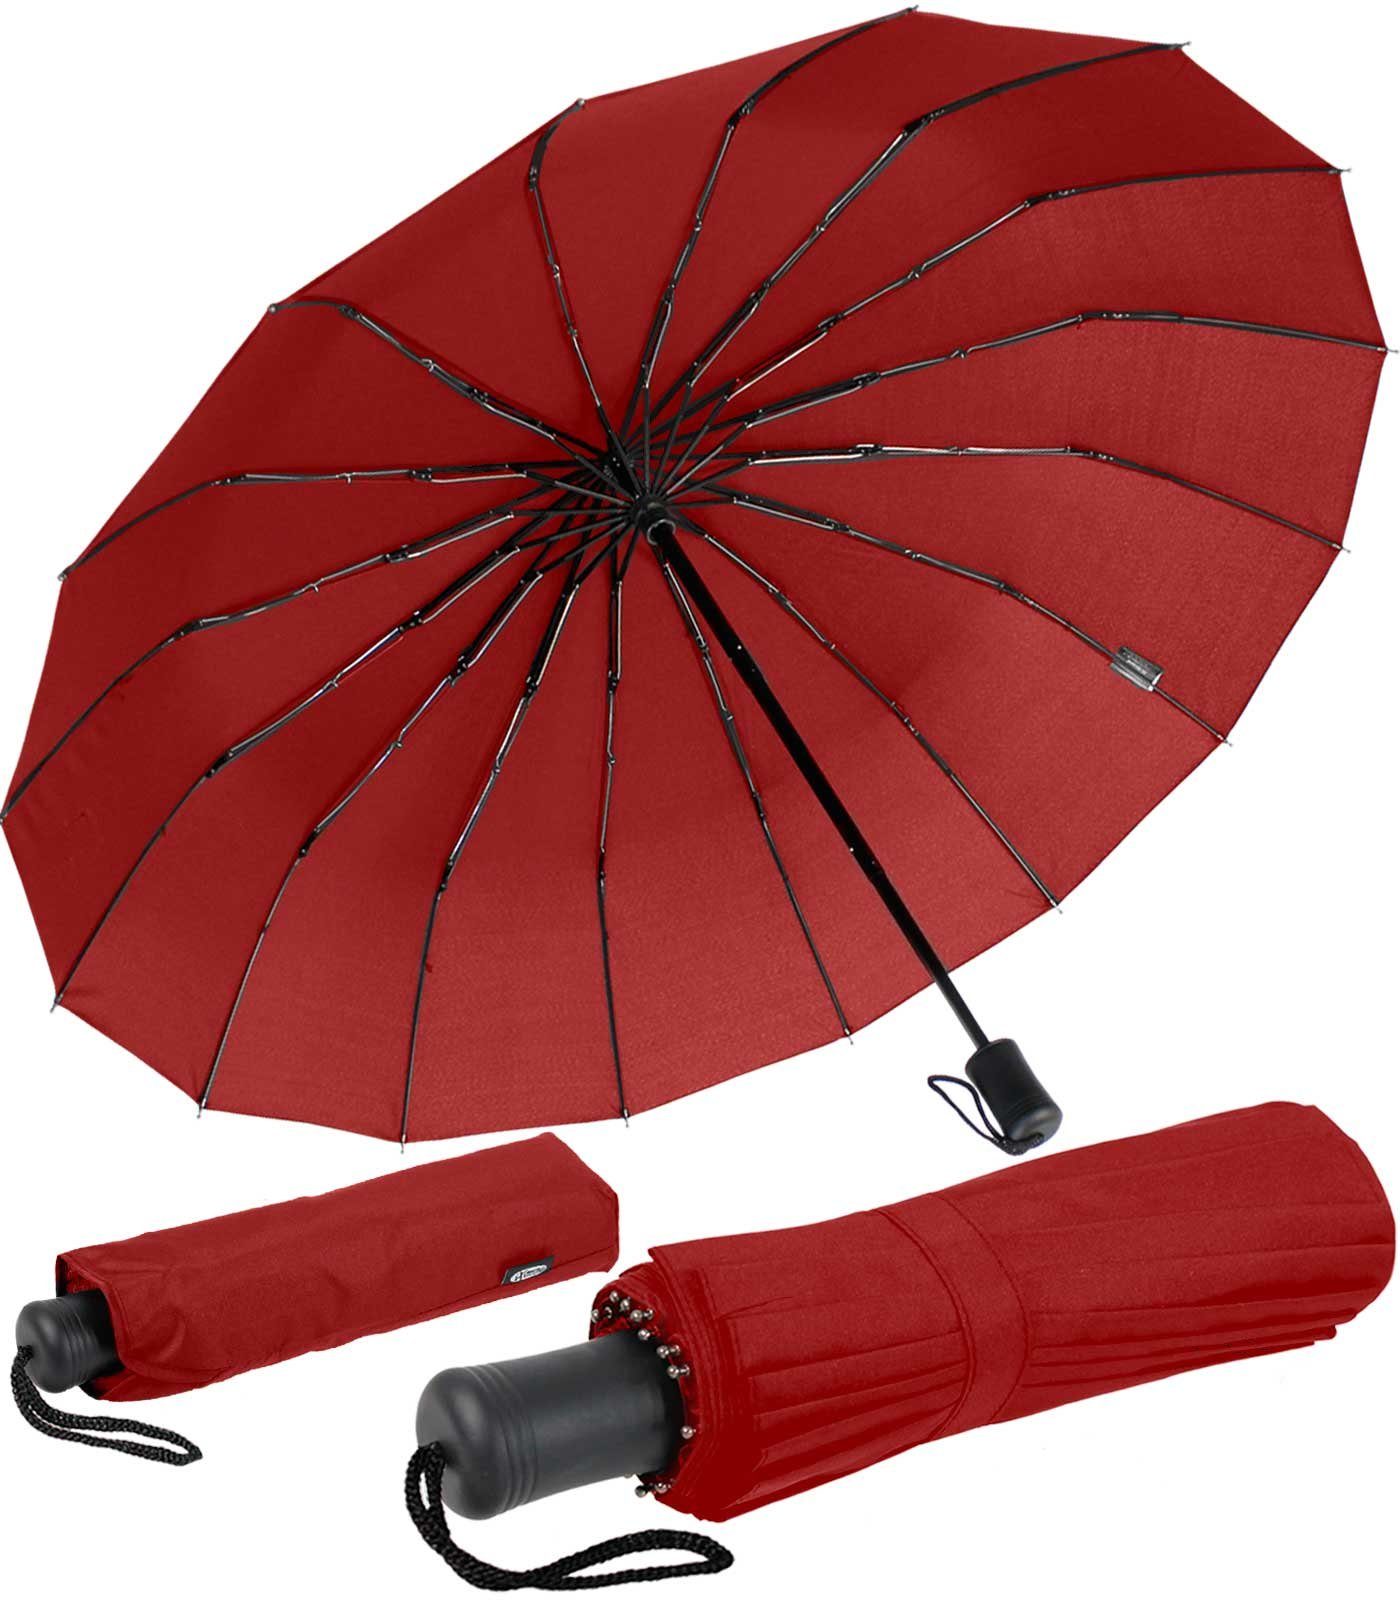 iX-brella Taschenregenschirm Mini mit 16 Streben extra stabil und farbenfroh, auffällig und extravagant dunkelrot